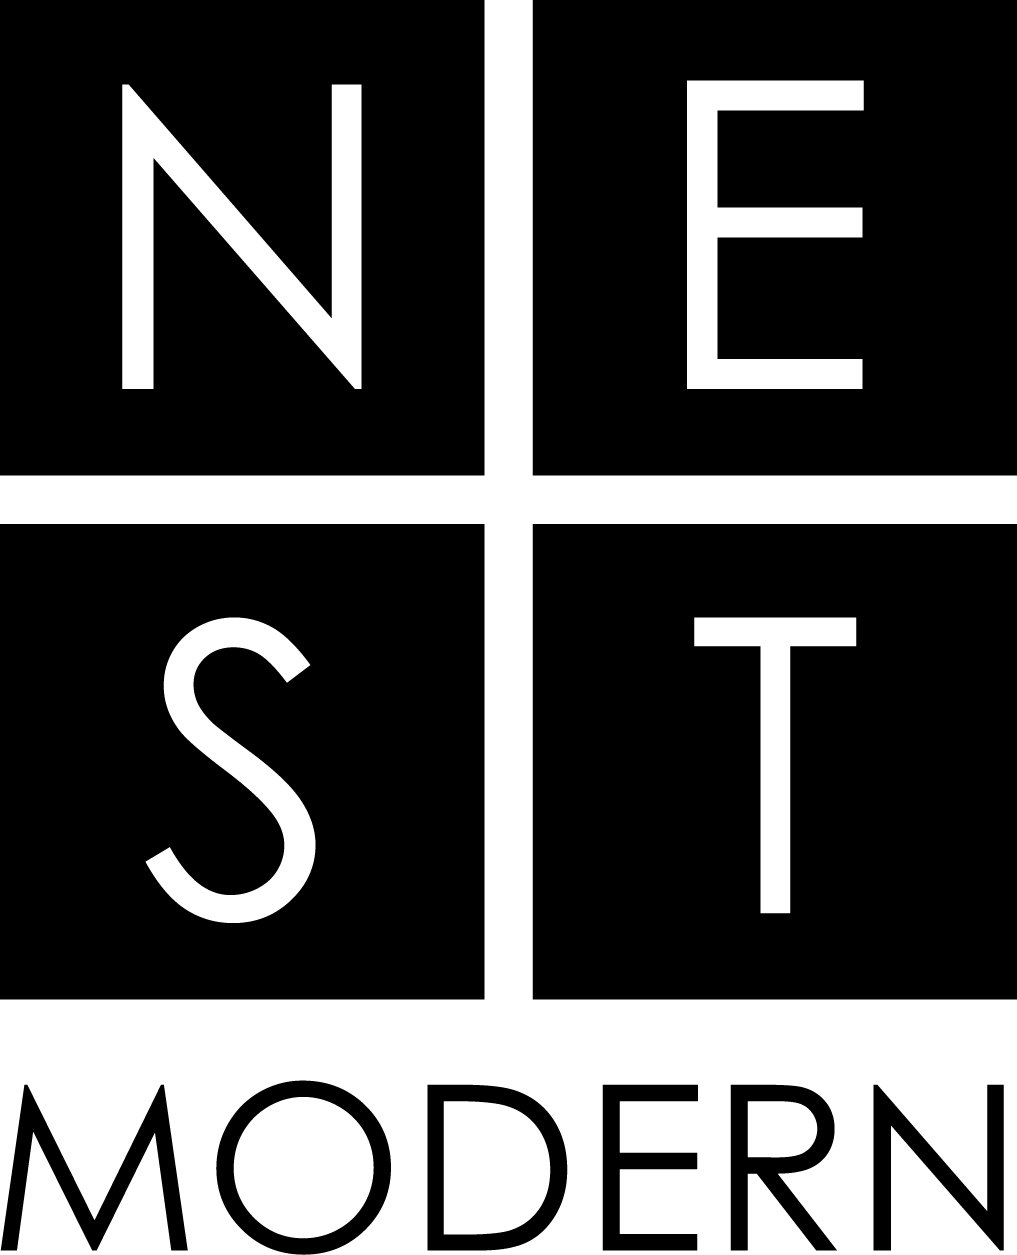 NEST logo-new_blck.jpg